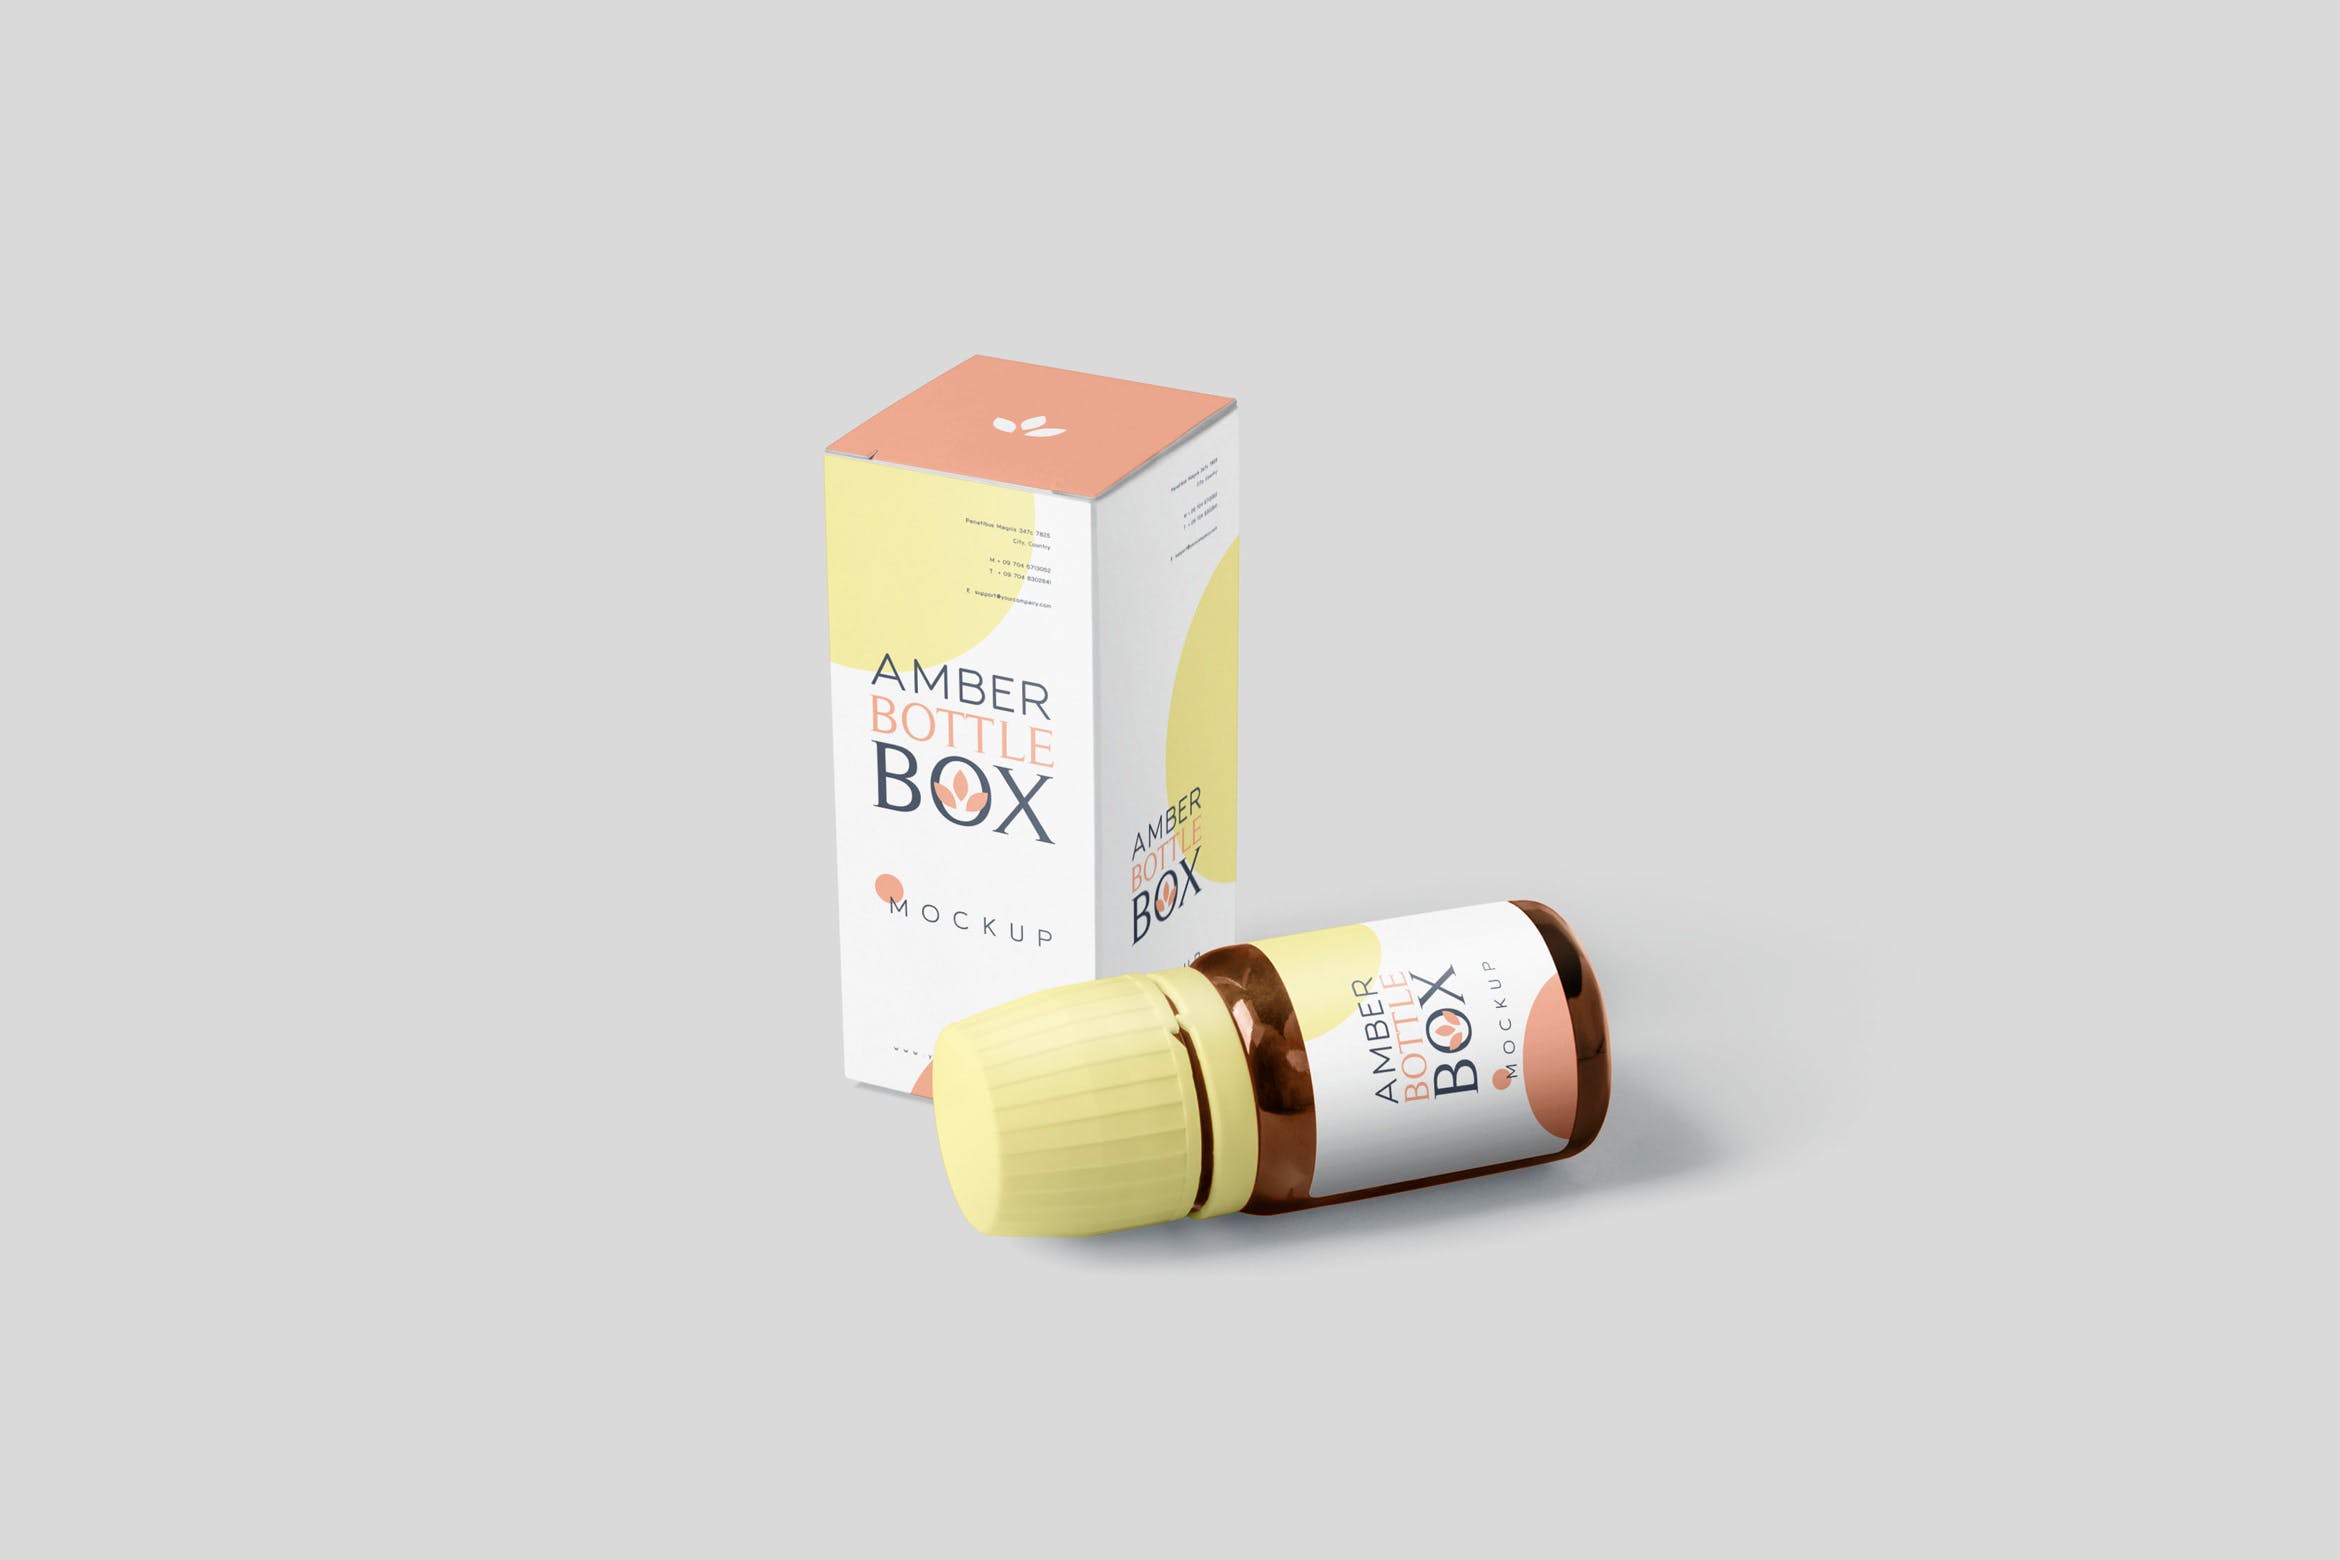 药物瓶&包装纸盒设计图16图库精选模板 Amber Bottle Box Mockup Set插图